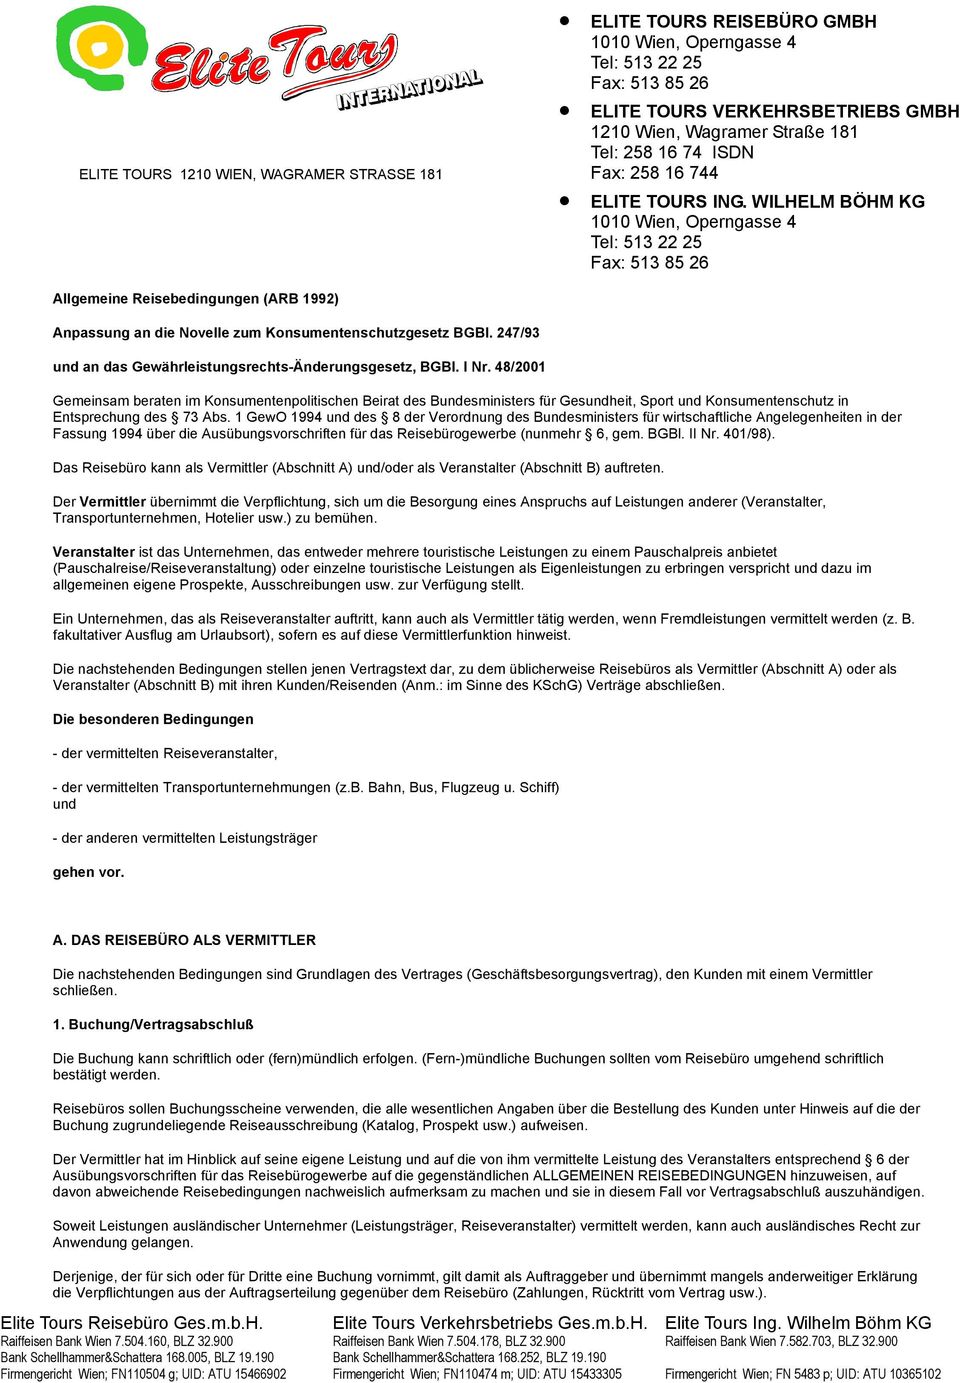 WILHELM BÖHM KG 1010 Wien, Operngasse 4 Tel: 513 22 25 Fax: 513 85 26 Allgemeine Reisebedingungen (ARB 1992) Anpassung an die Novelle zum Konsumentenschutzgesetz BGBl.